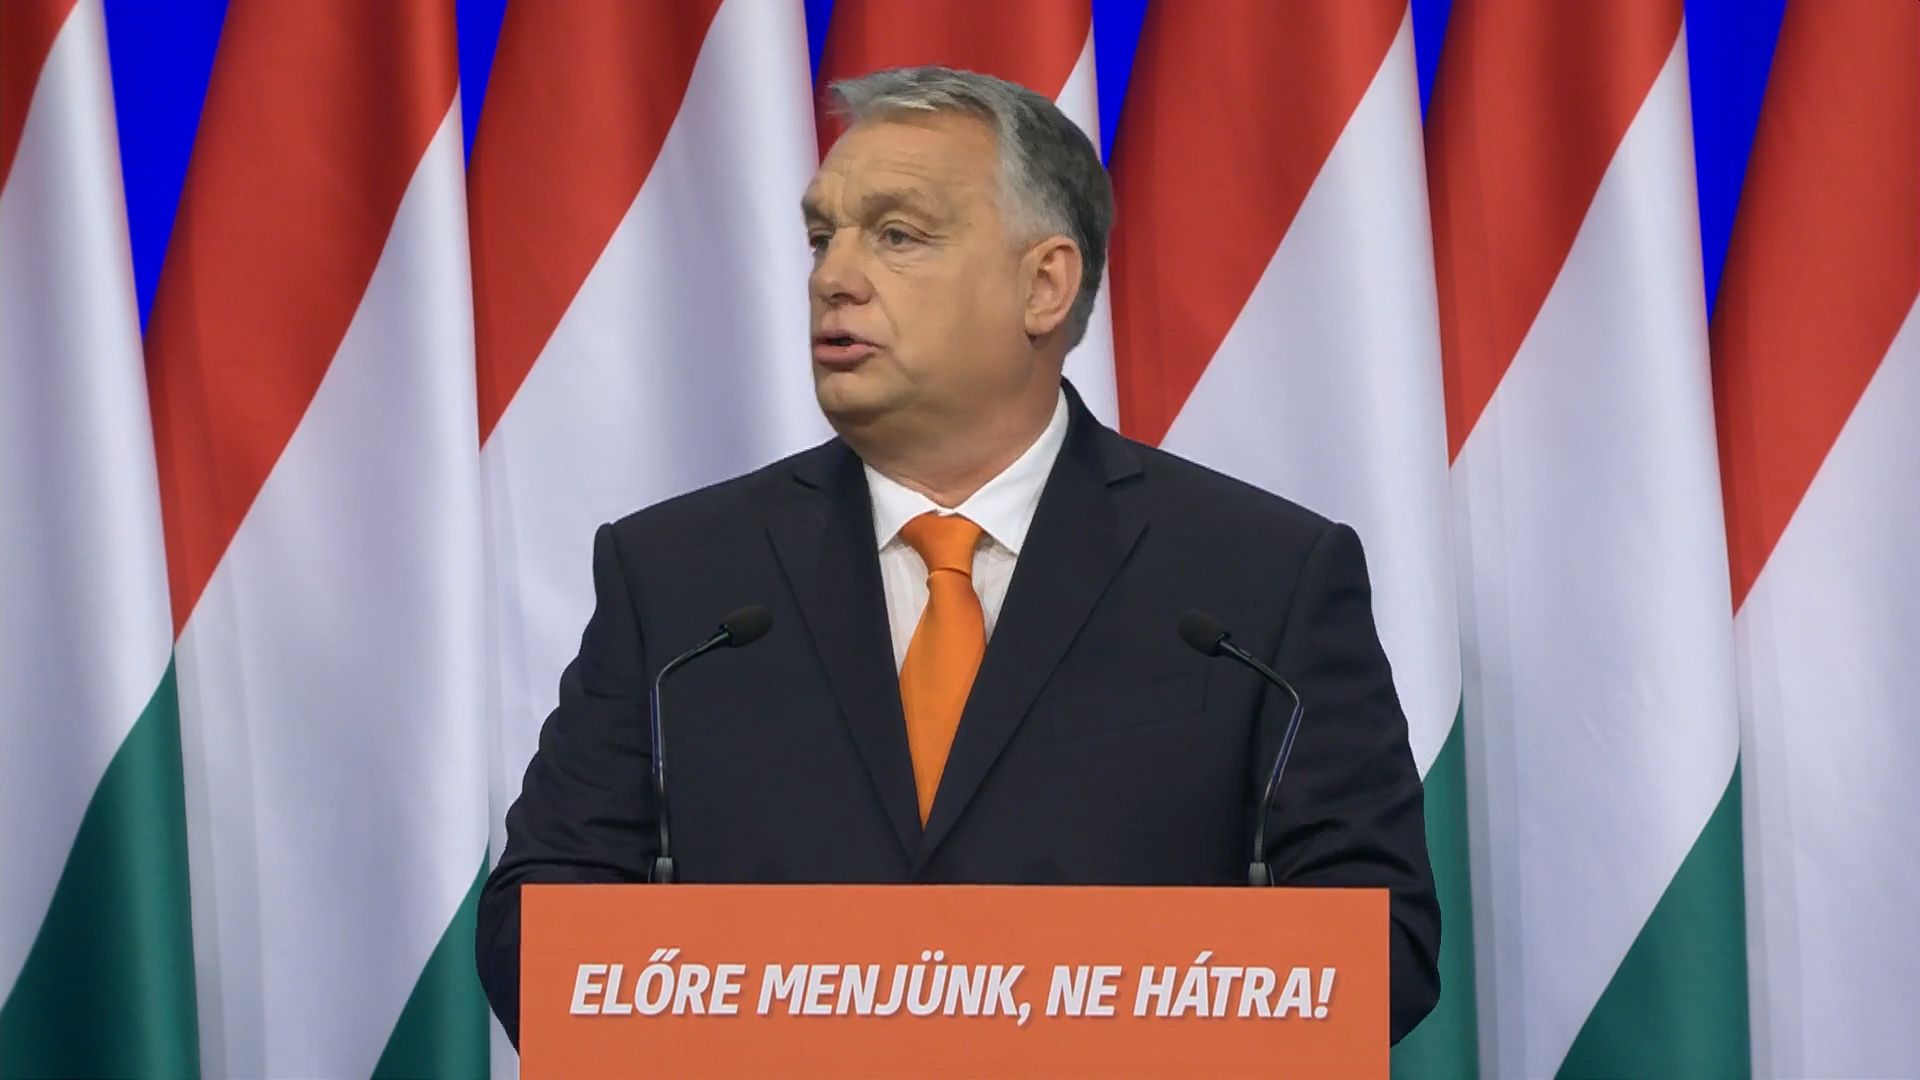 Kiderült, mikor tartja évértékelő beszédét Orbán Viktor